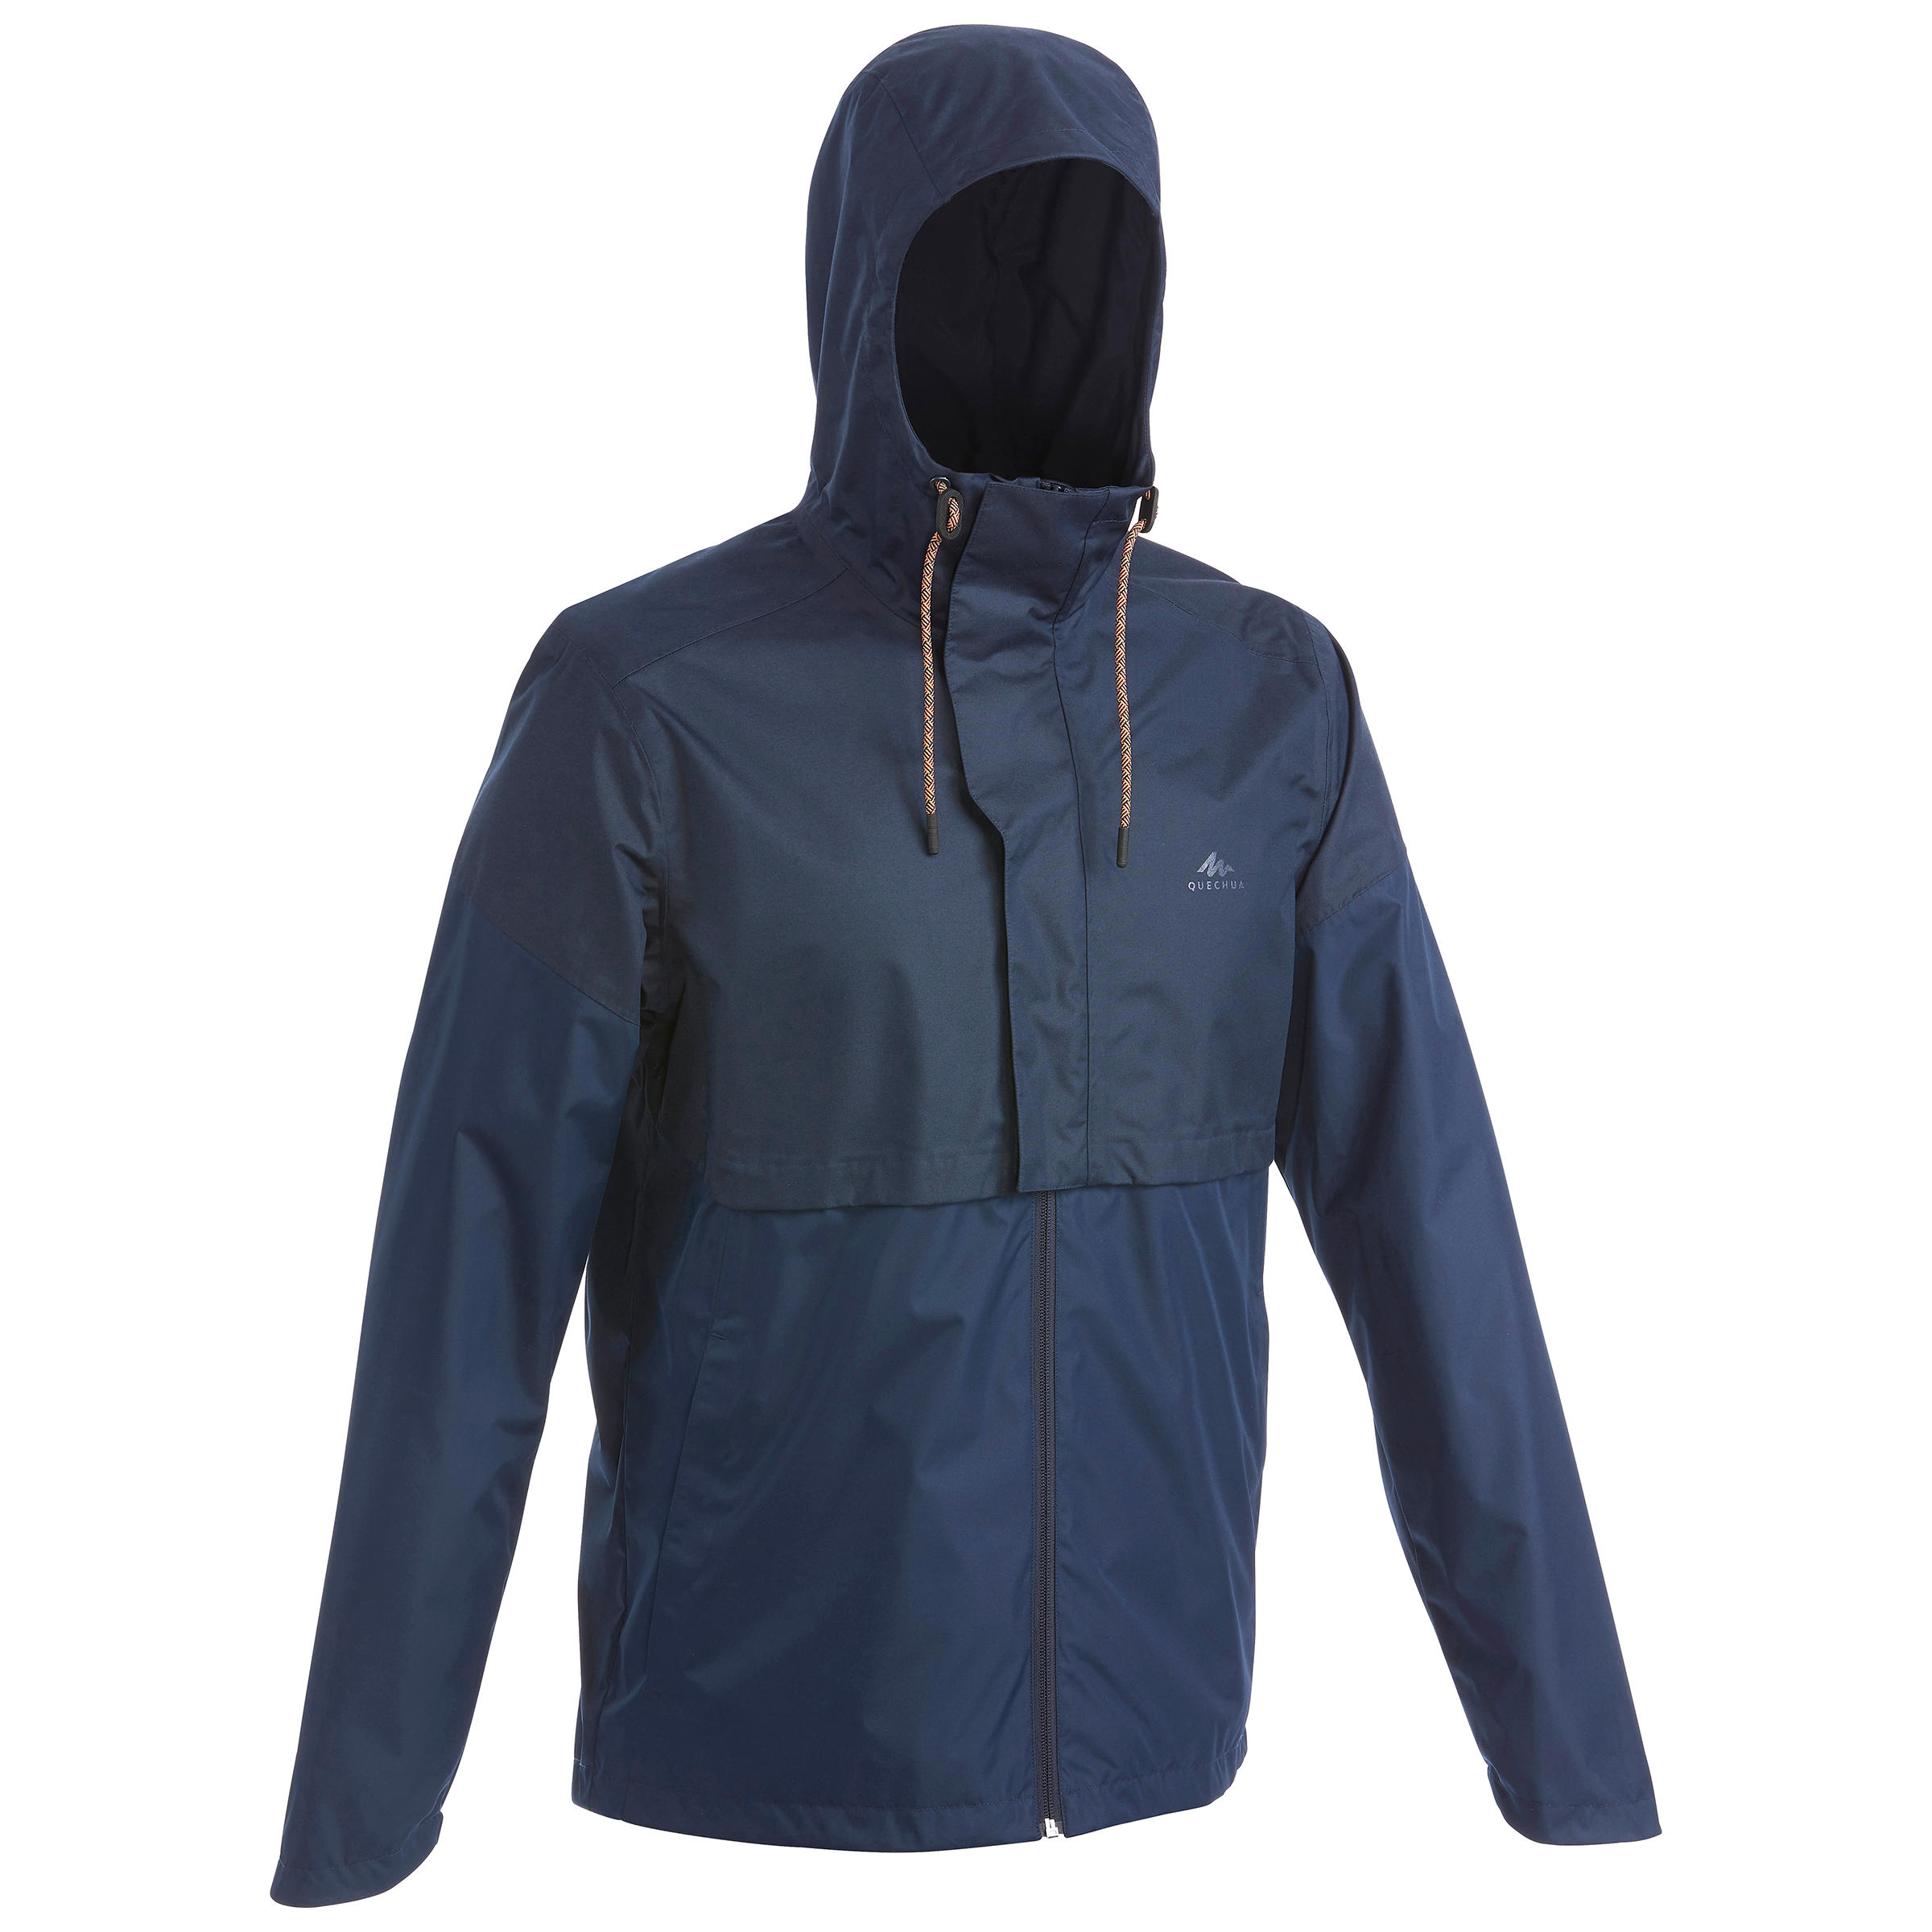 Men's waterpoof jacket - NH500 - Beige 1/18